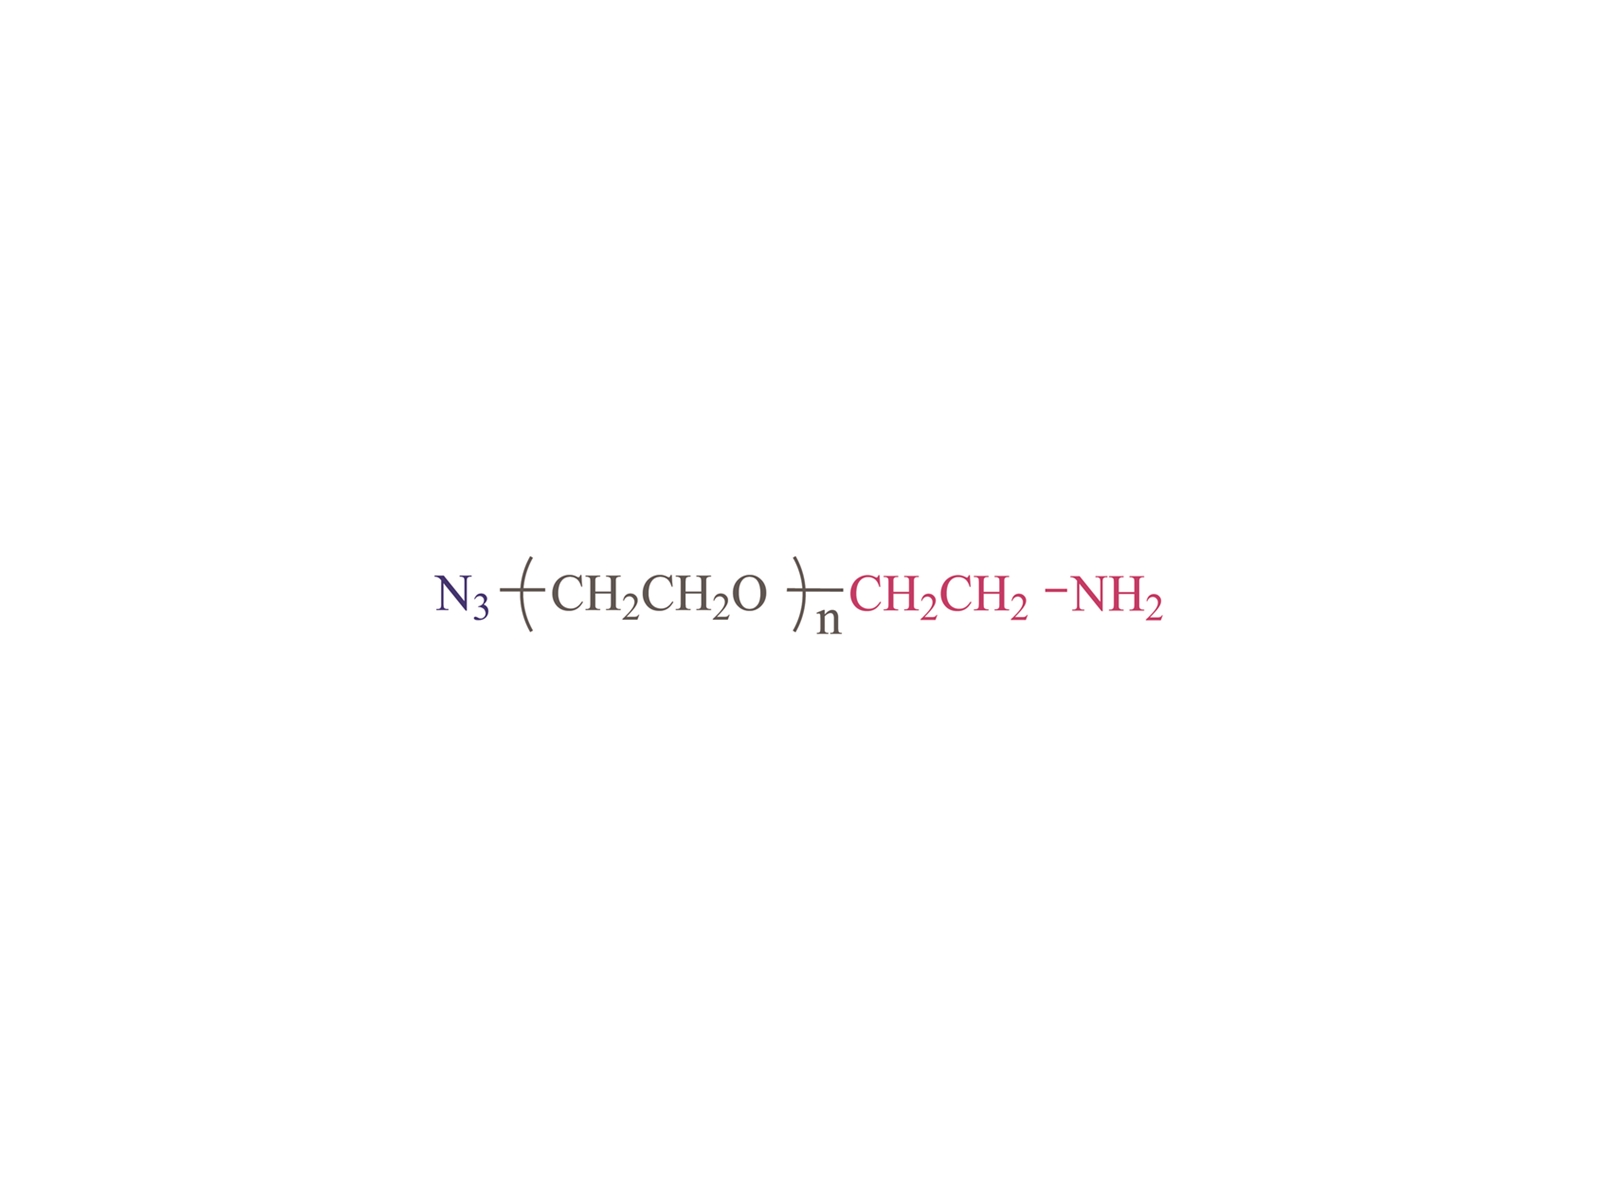 α-Azido-ω-amino poly(ethylene glycol) [N3-PEG-NH2] Cas:464190-91-8,166388-57-4,134179-38-7,951671-92-4,516493-93-9,957486-82-7,1333154-77-0,857891-82-8,912849-73-1,1800414-71-4